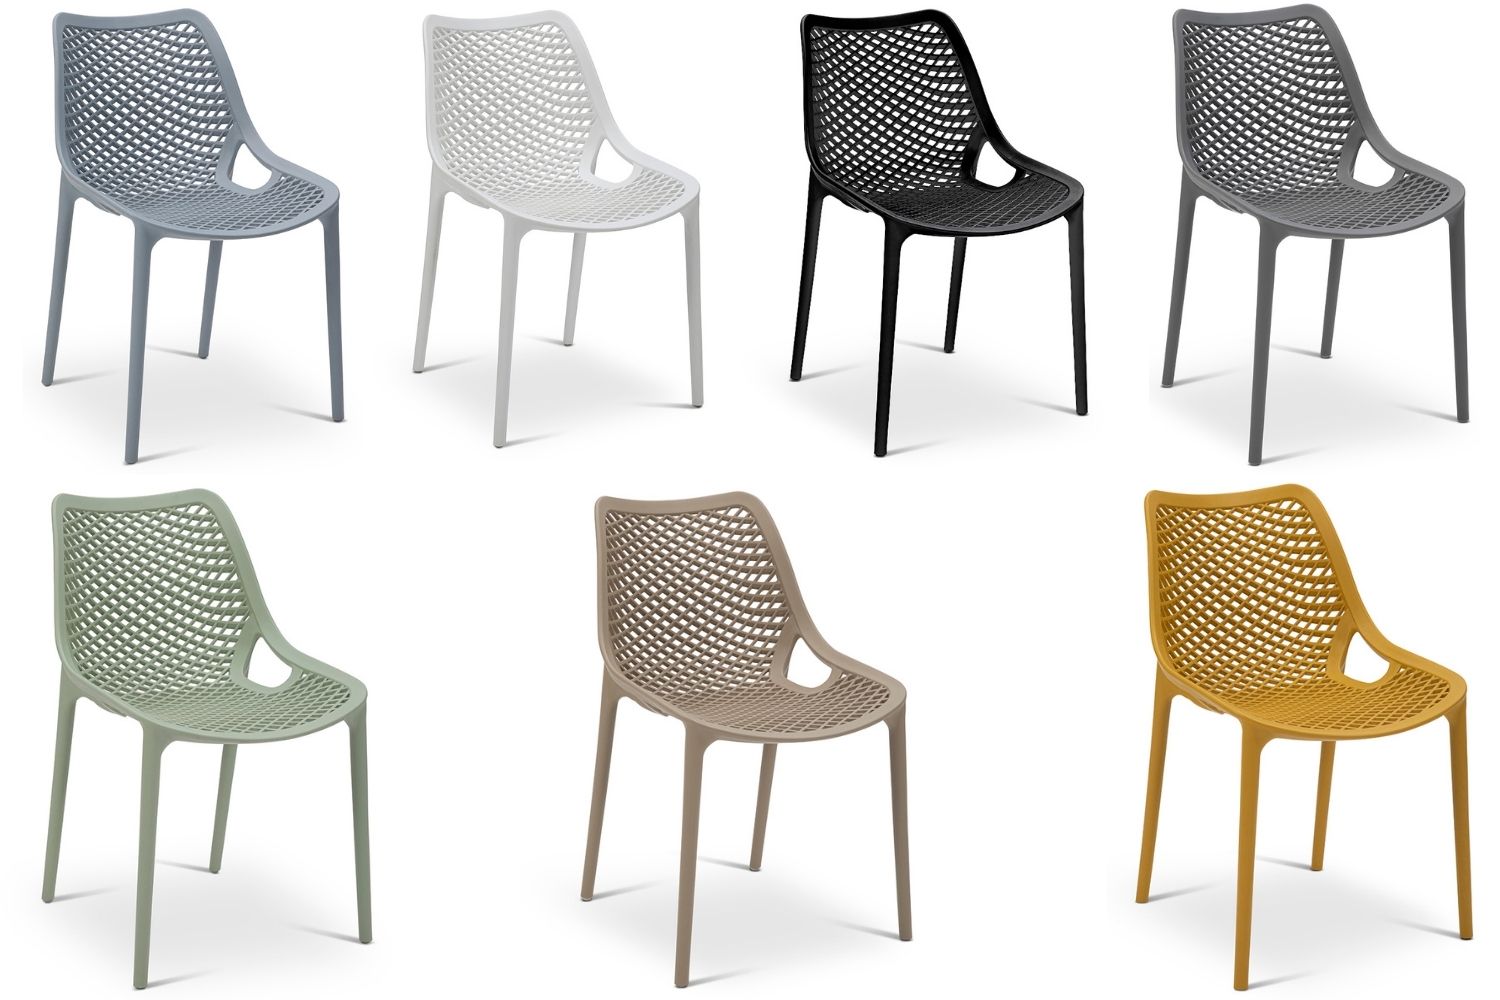 כיסאות דגם לסטר במגוון צבעים